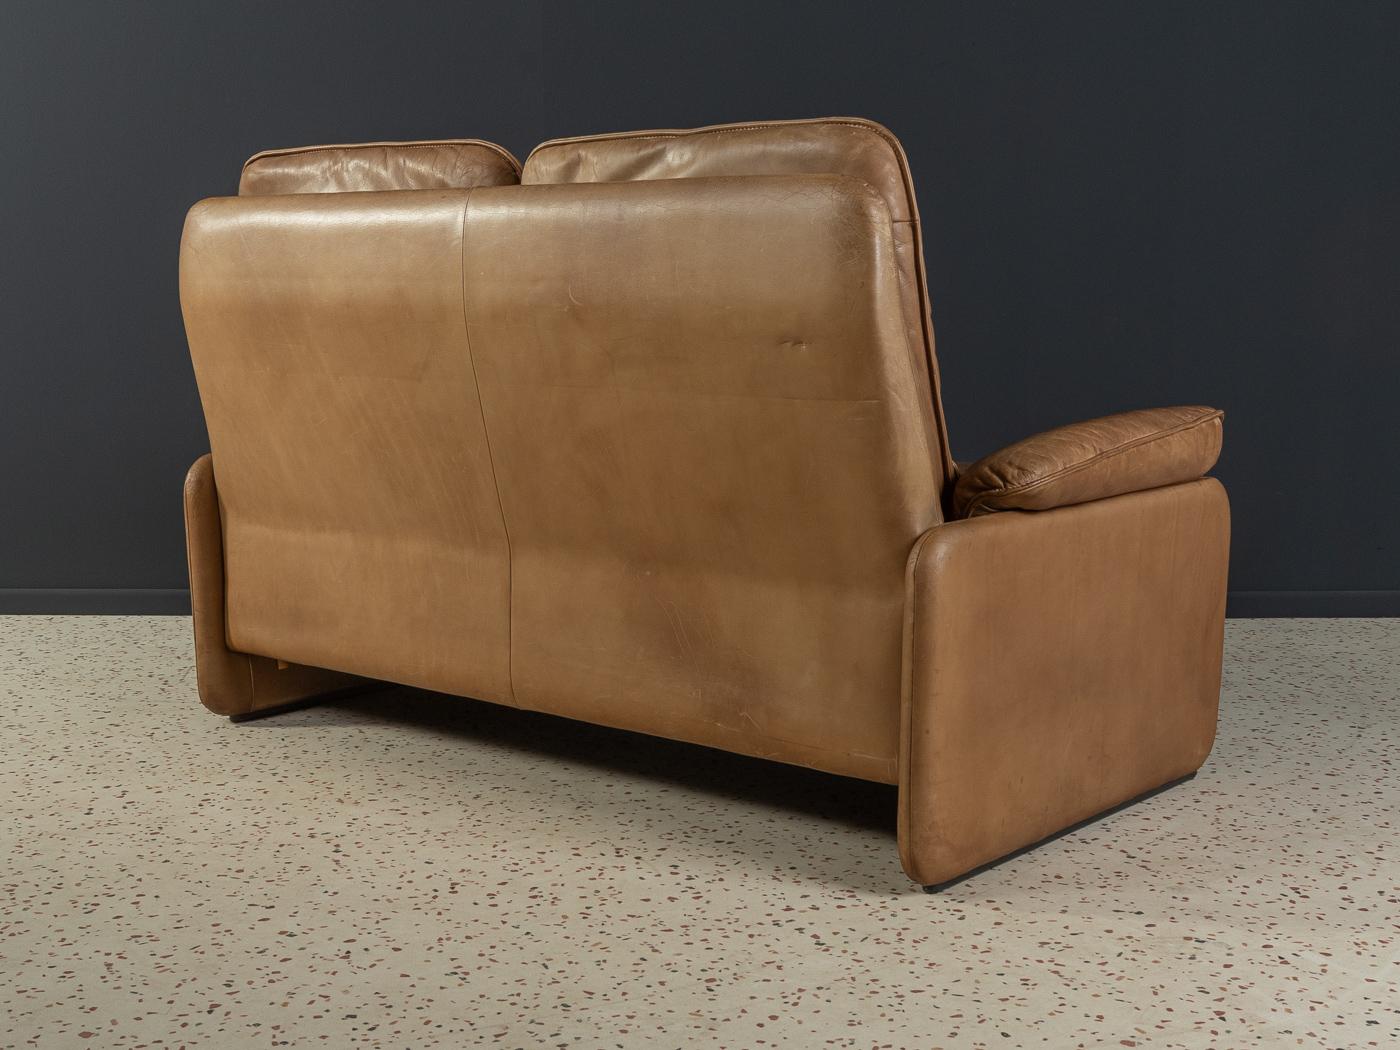 Seltenes hochlehniges 2-Sitzer-Sofa DS-61 aus den 1970er Jahren von DeSede mit dem auffälligen Originalbezug aus cognacfarbenem Büffelleder mit einer wunderschönen Patina.

Qualitätsmerkmale:
Sehr gute Verarbeitung
Hochwertige